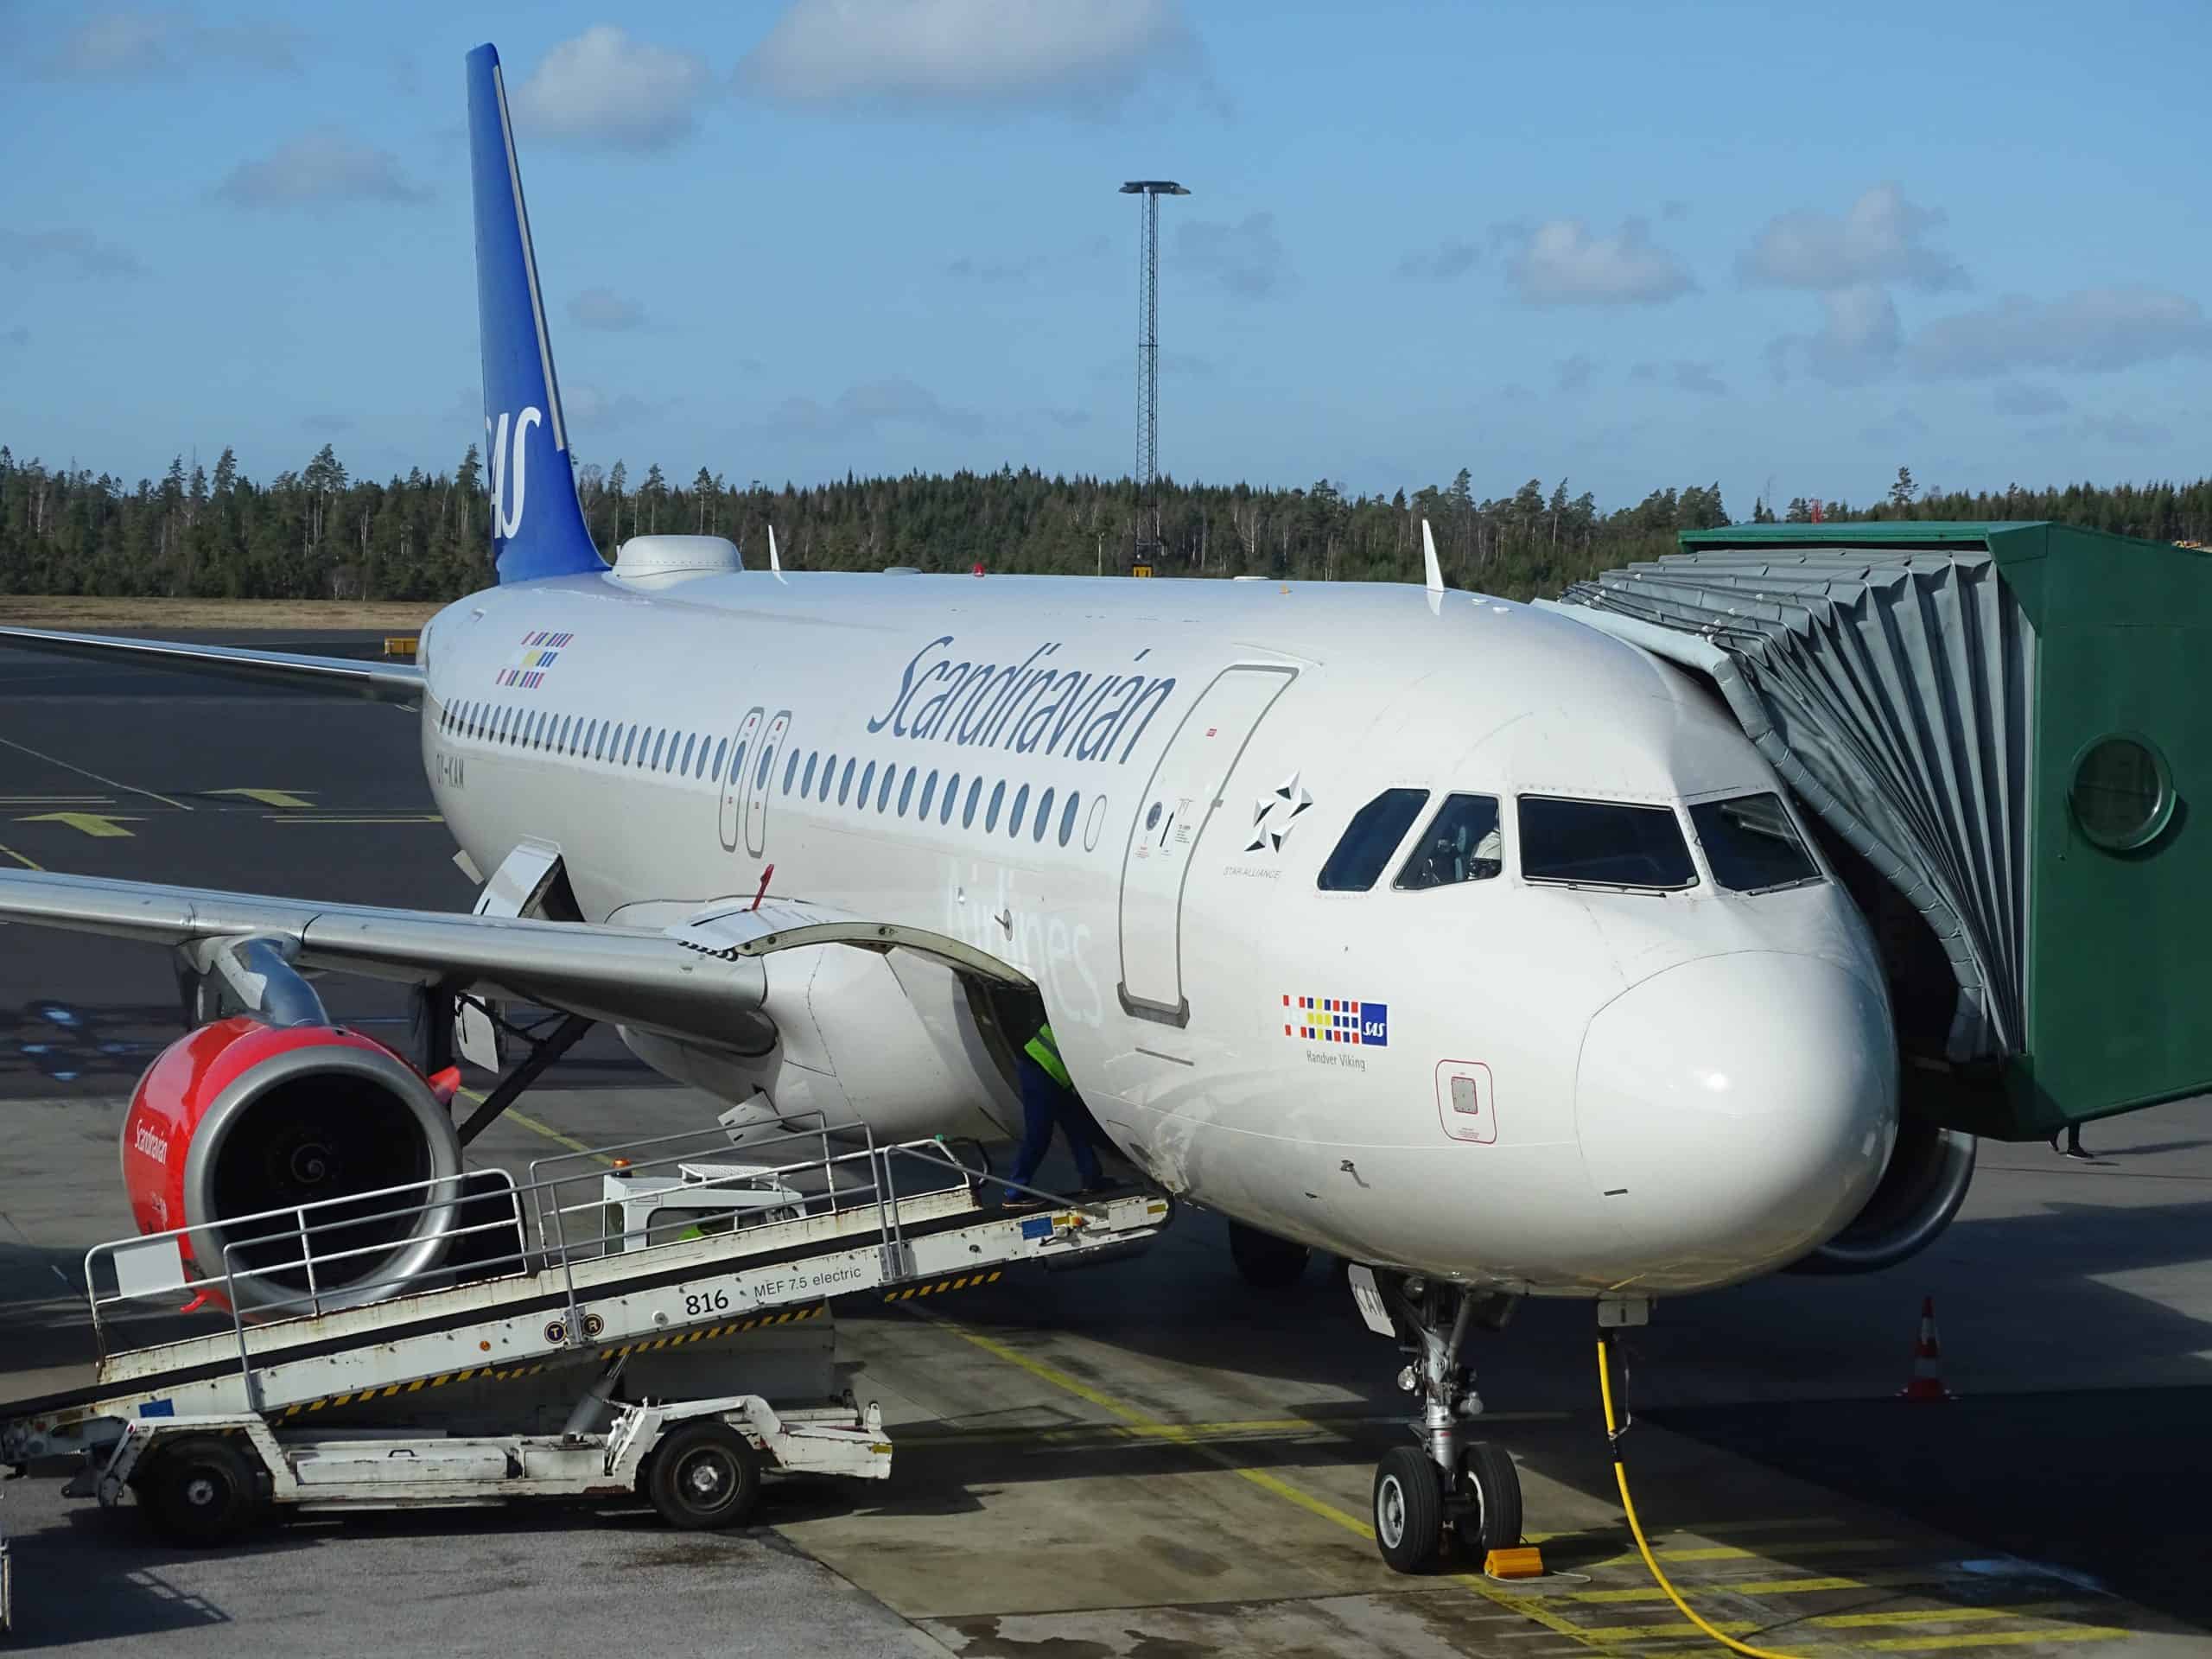 Scandinavian Airlines (SAS) aviosabiedrība, lepns lidotājs, kas savieno Skandināviju